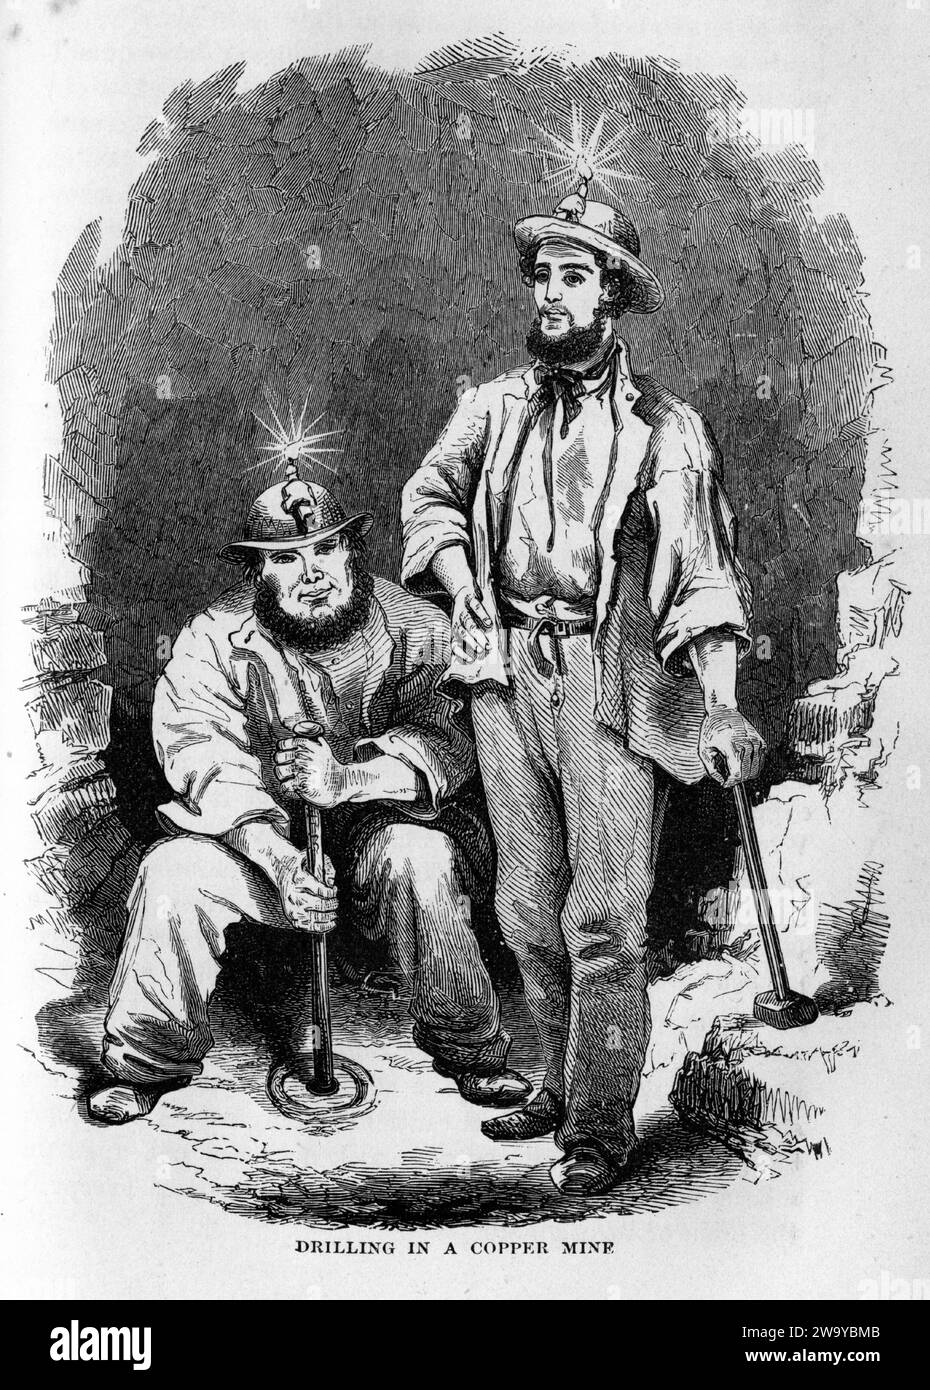 Grabado de hombres aptos para perforar en una mina de cobre, de The Underground World, alrededor de 1878 Foto de stock